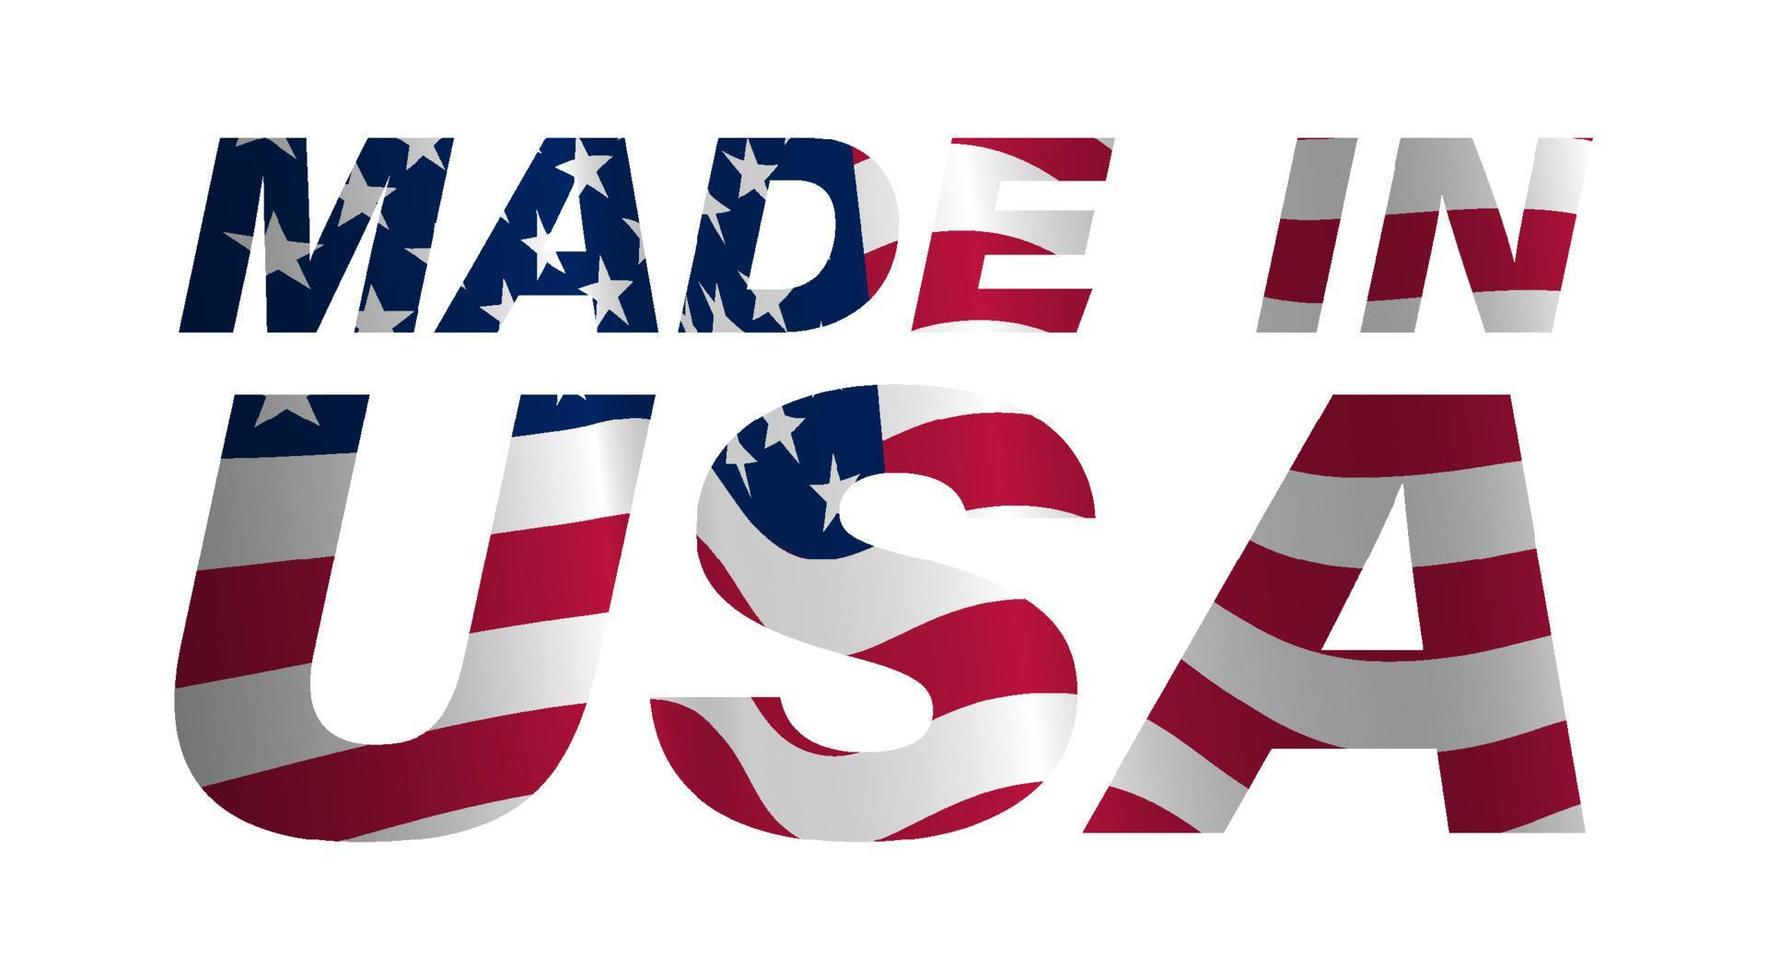 inscripción hecha en estados unidos en colores de la bandera americana. letras decorativas con símbolos americanos. vector sobre un fondo blanco